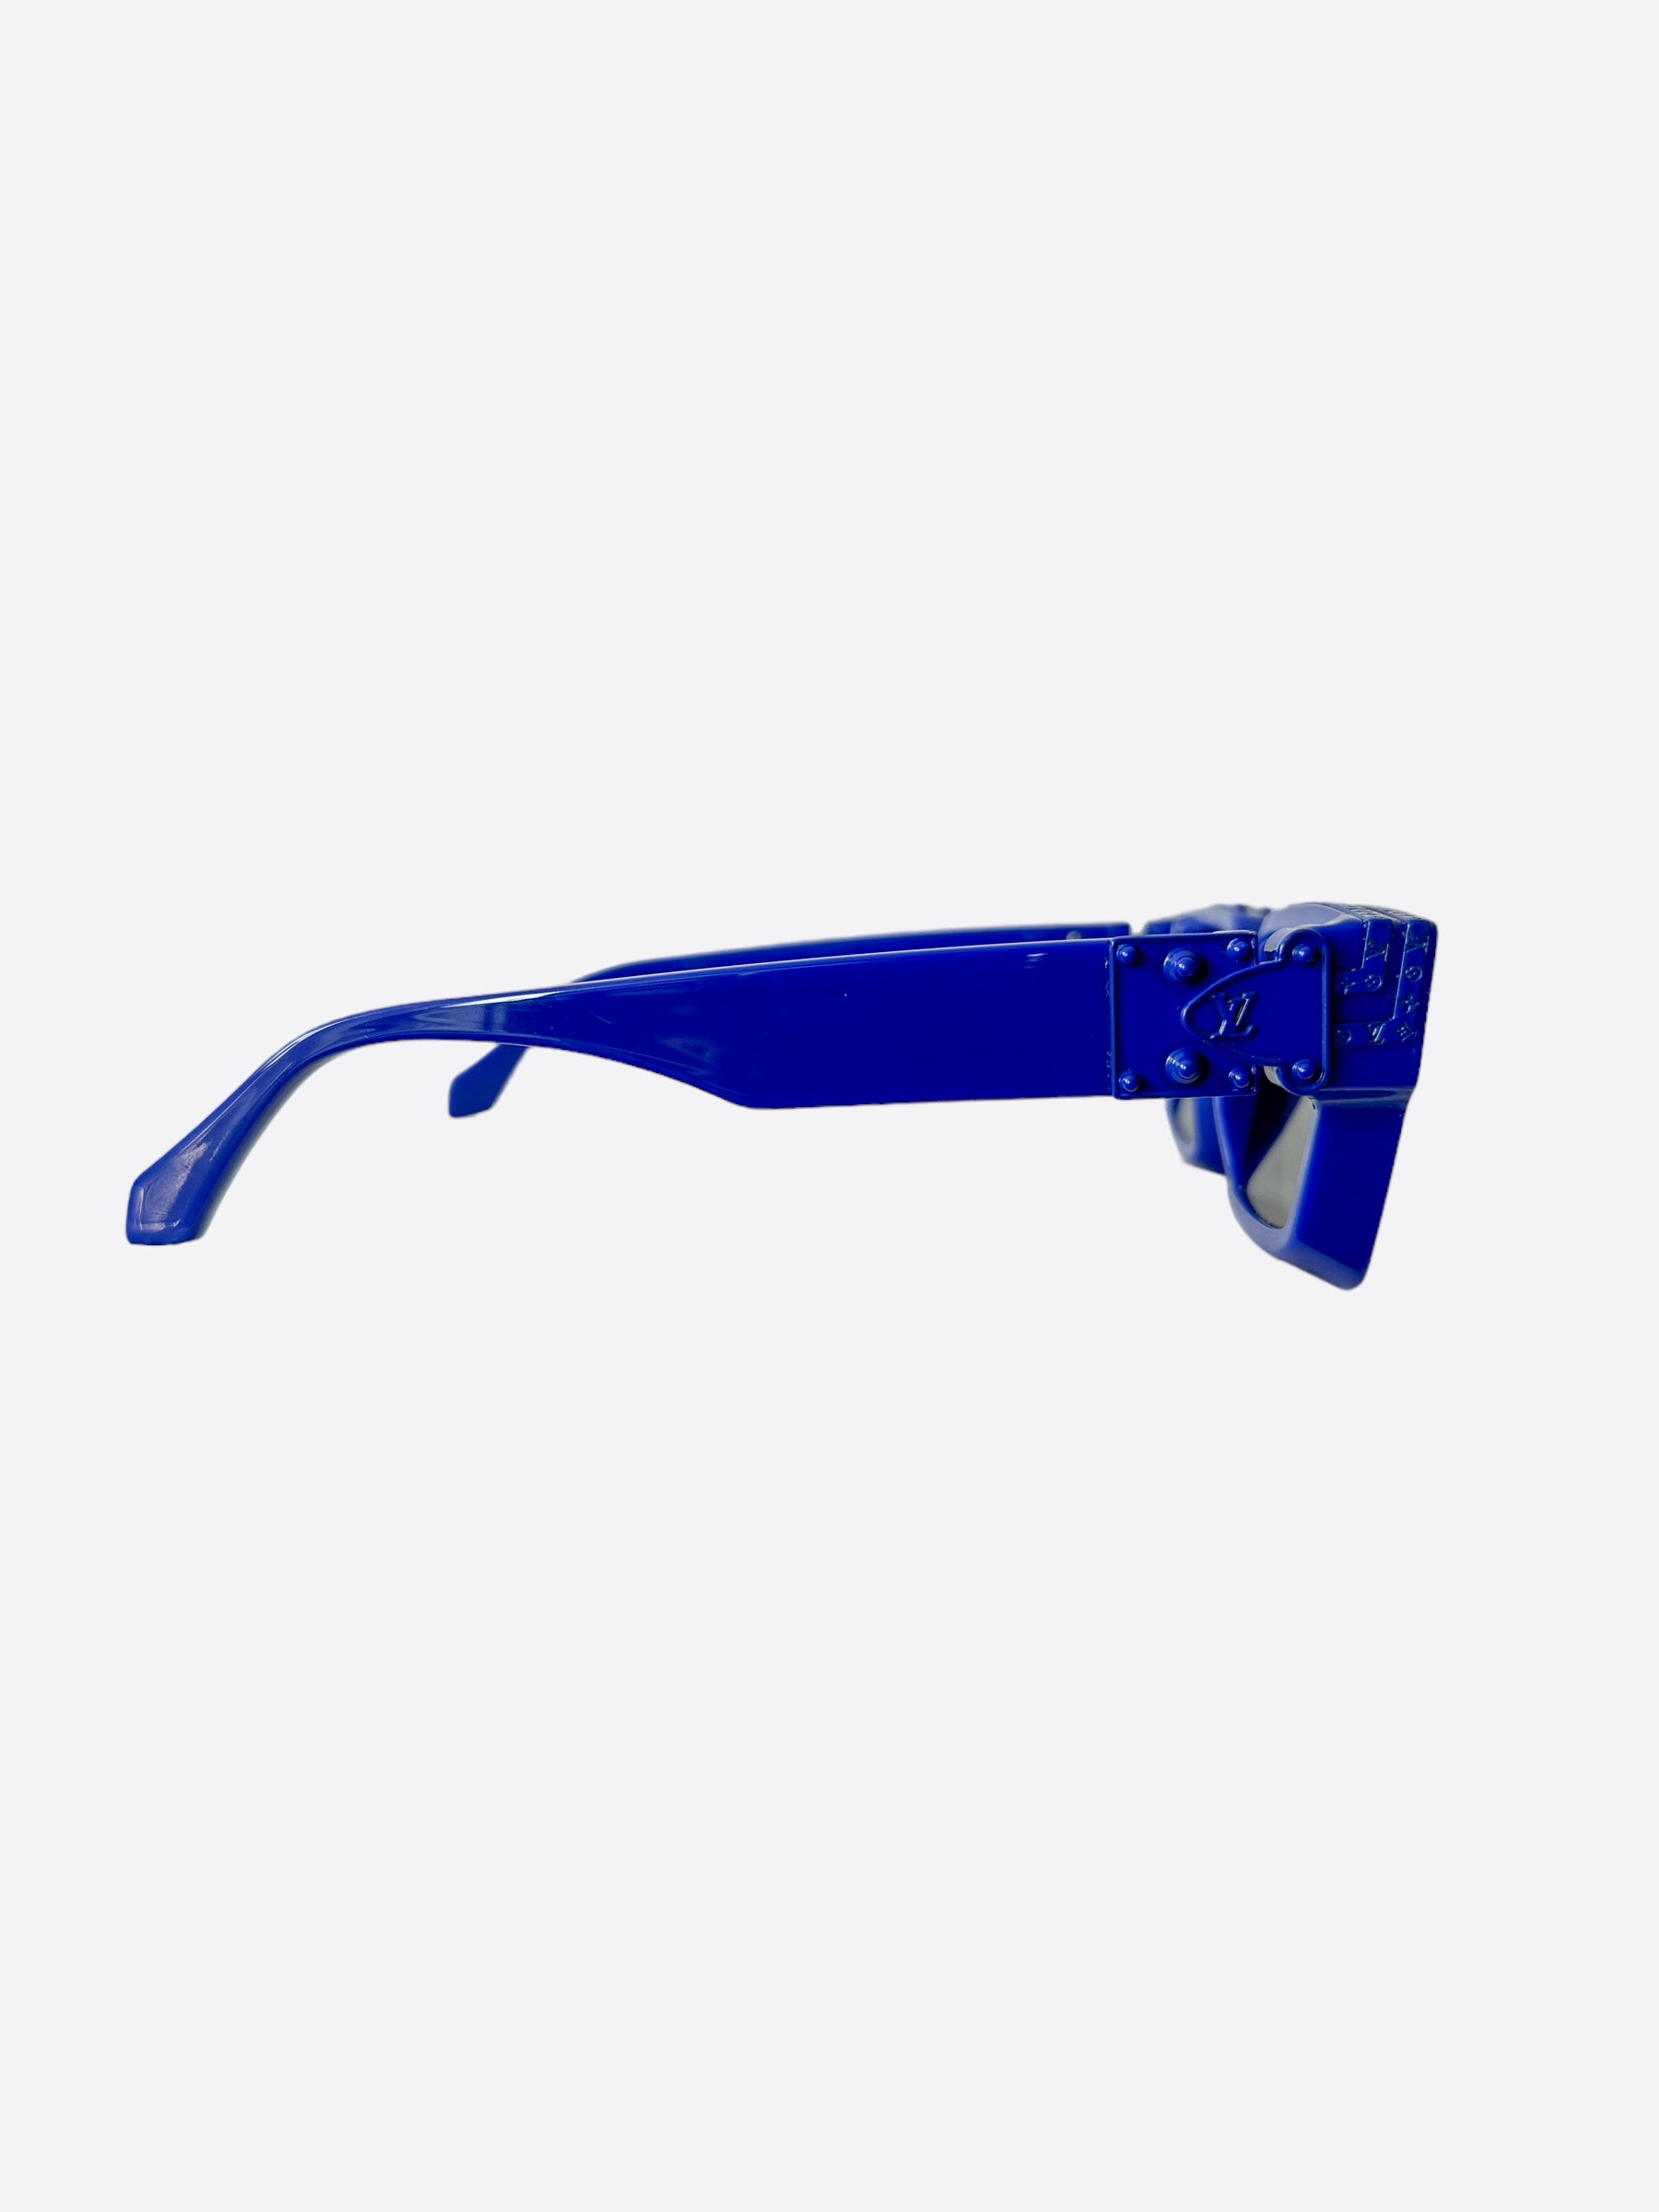 Louis Vuitton 1.1 Millionaires Sunglasses Pale Blue